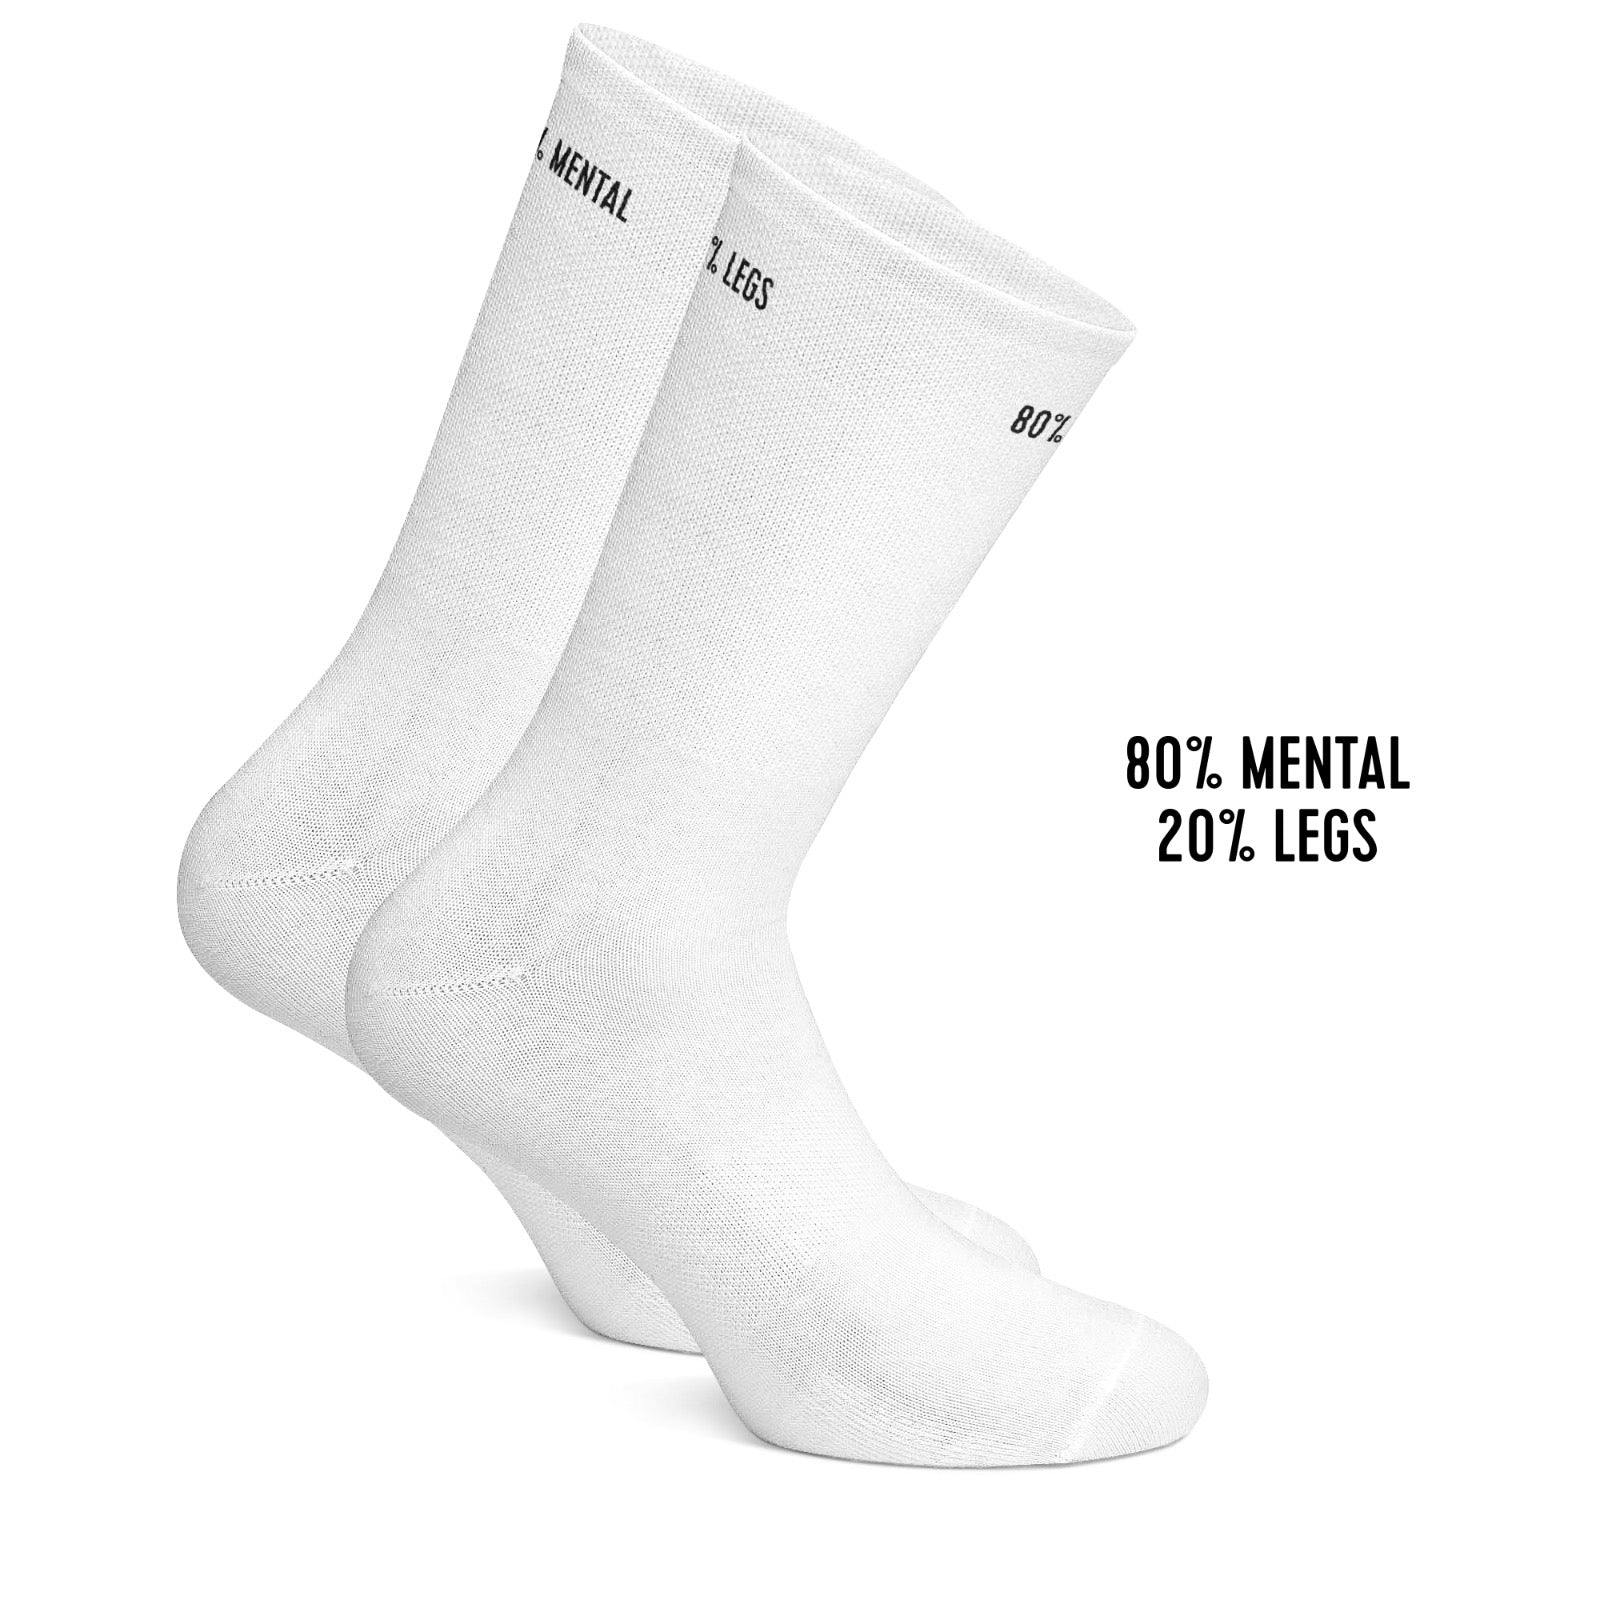 80% mental 20% legs cycling socks White